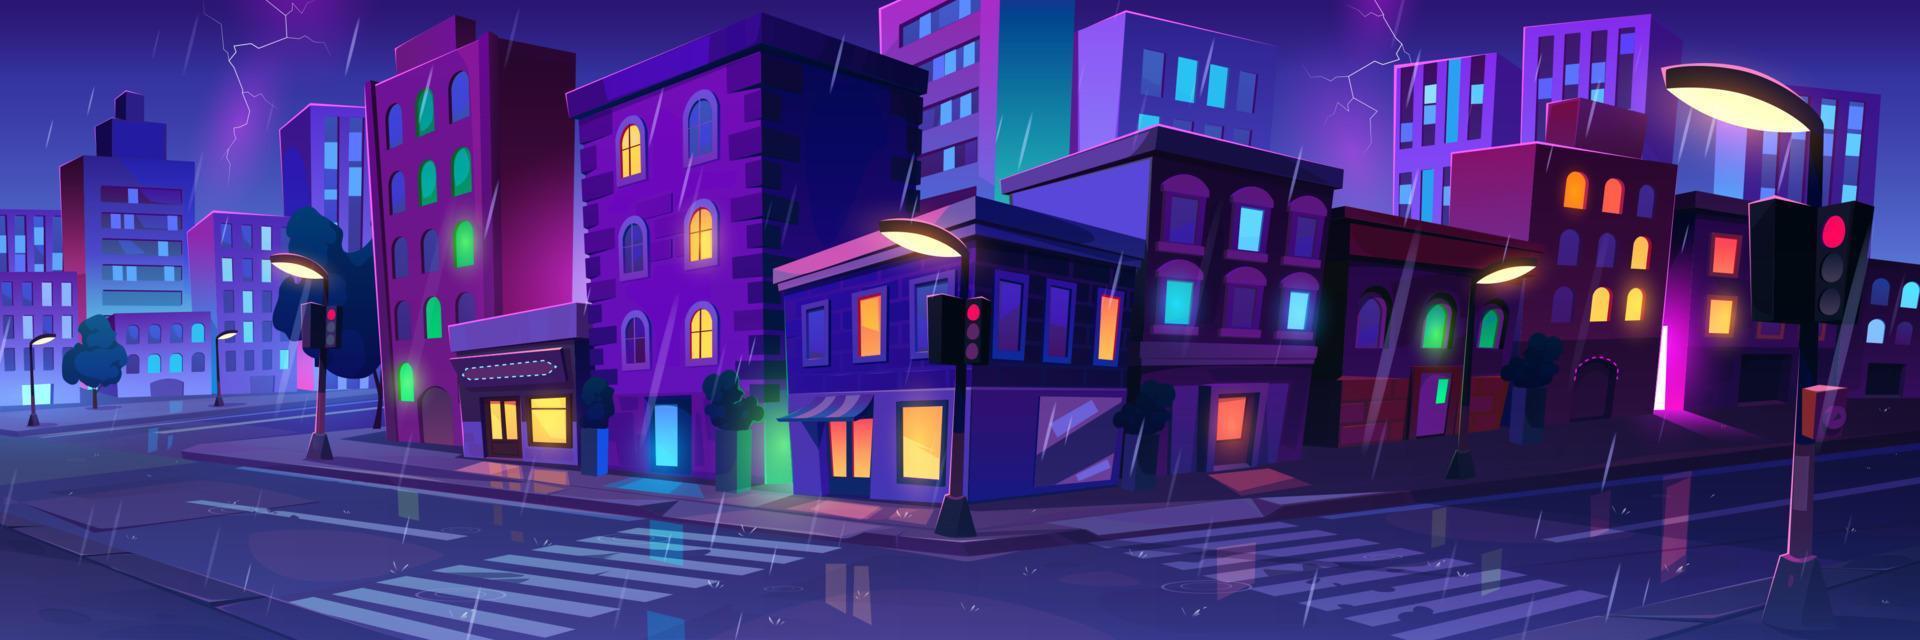 paisagem da cidade com casas na chuva à noite vetor